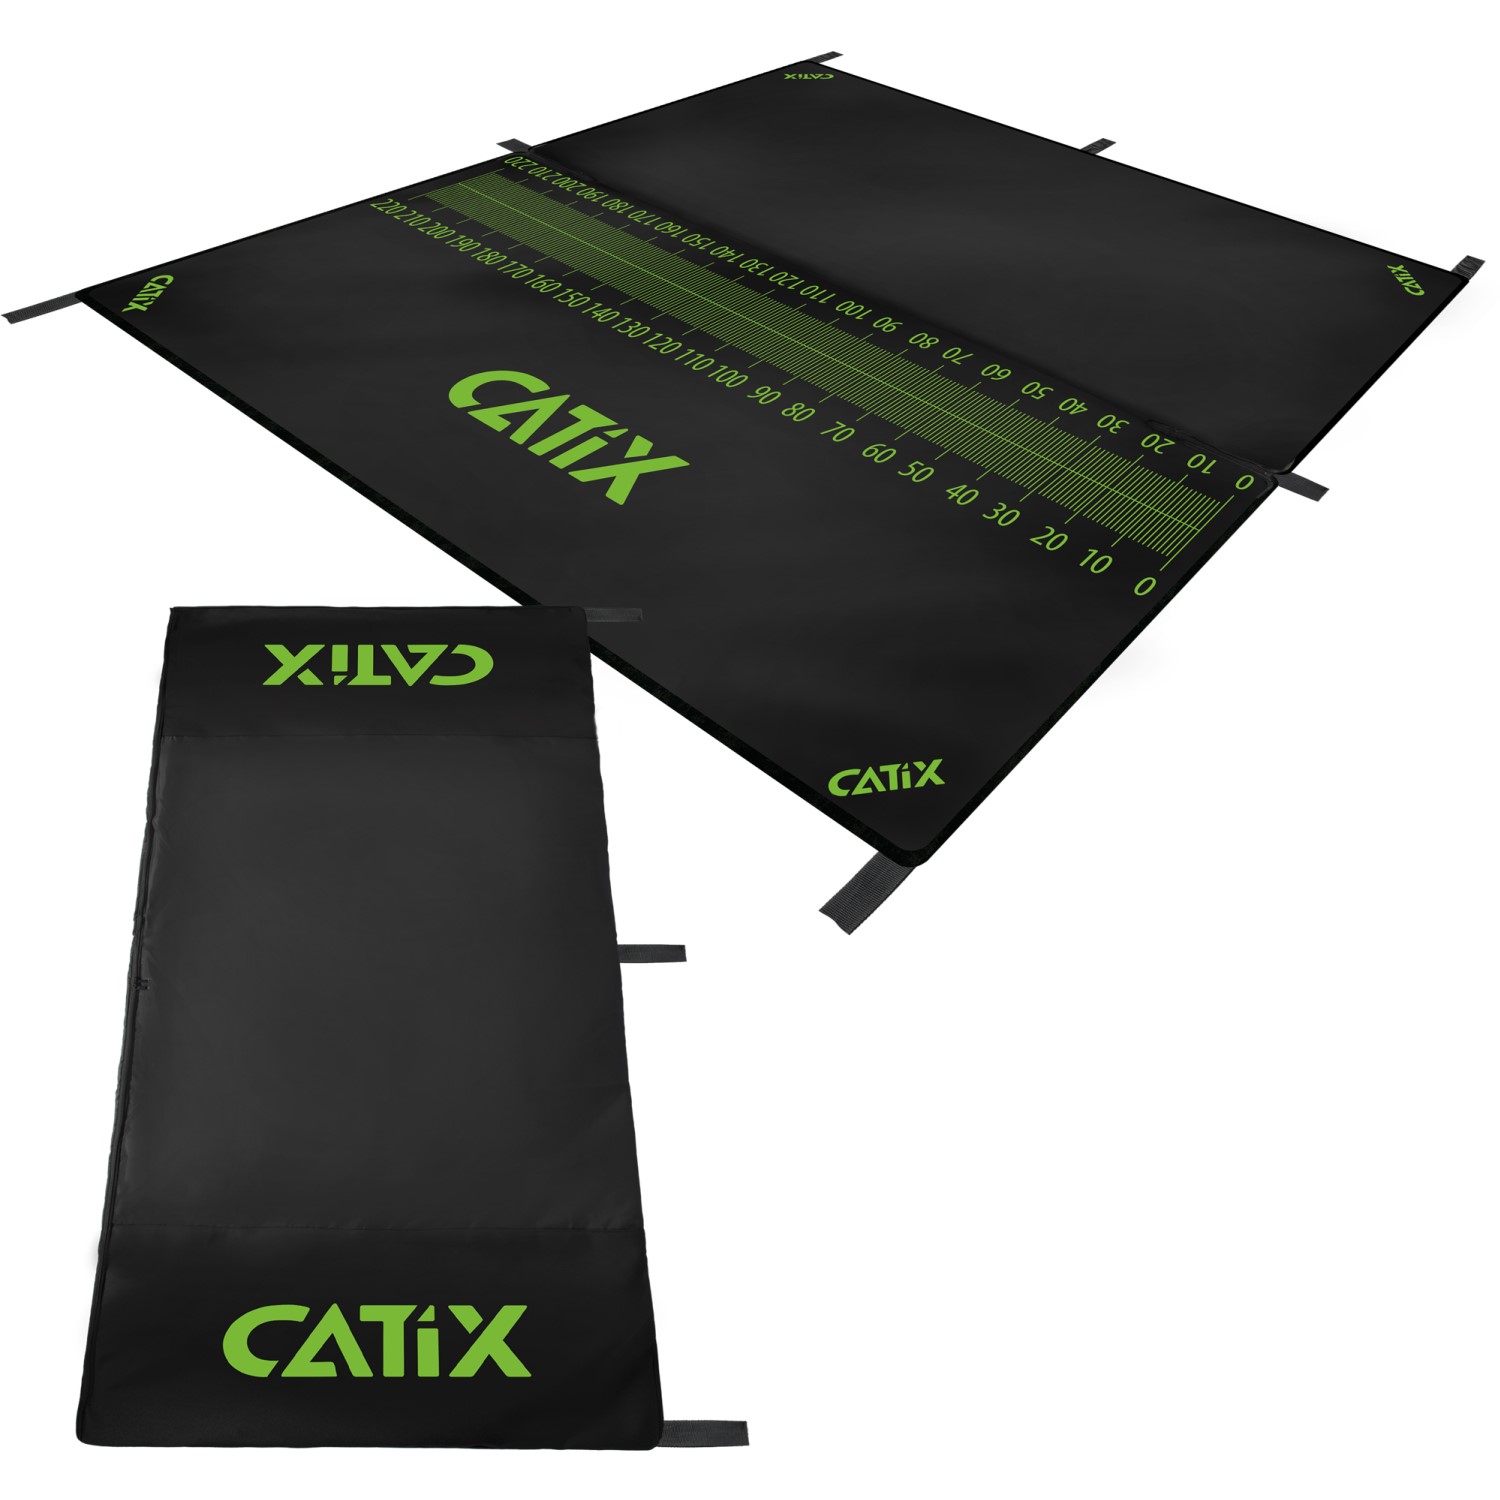 Catix Onthaakmat + Meetlat 230x200cm